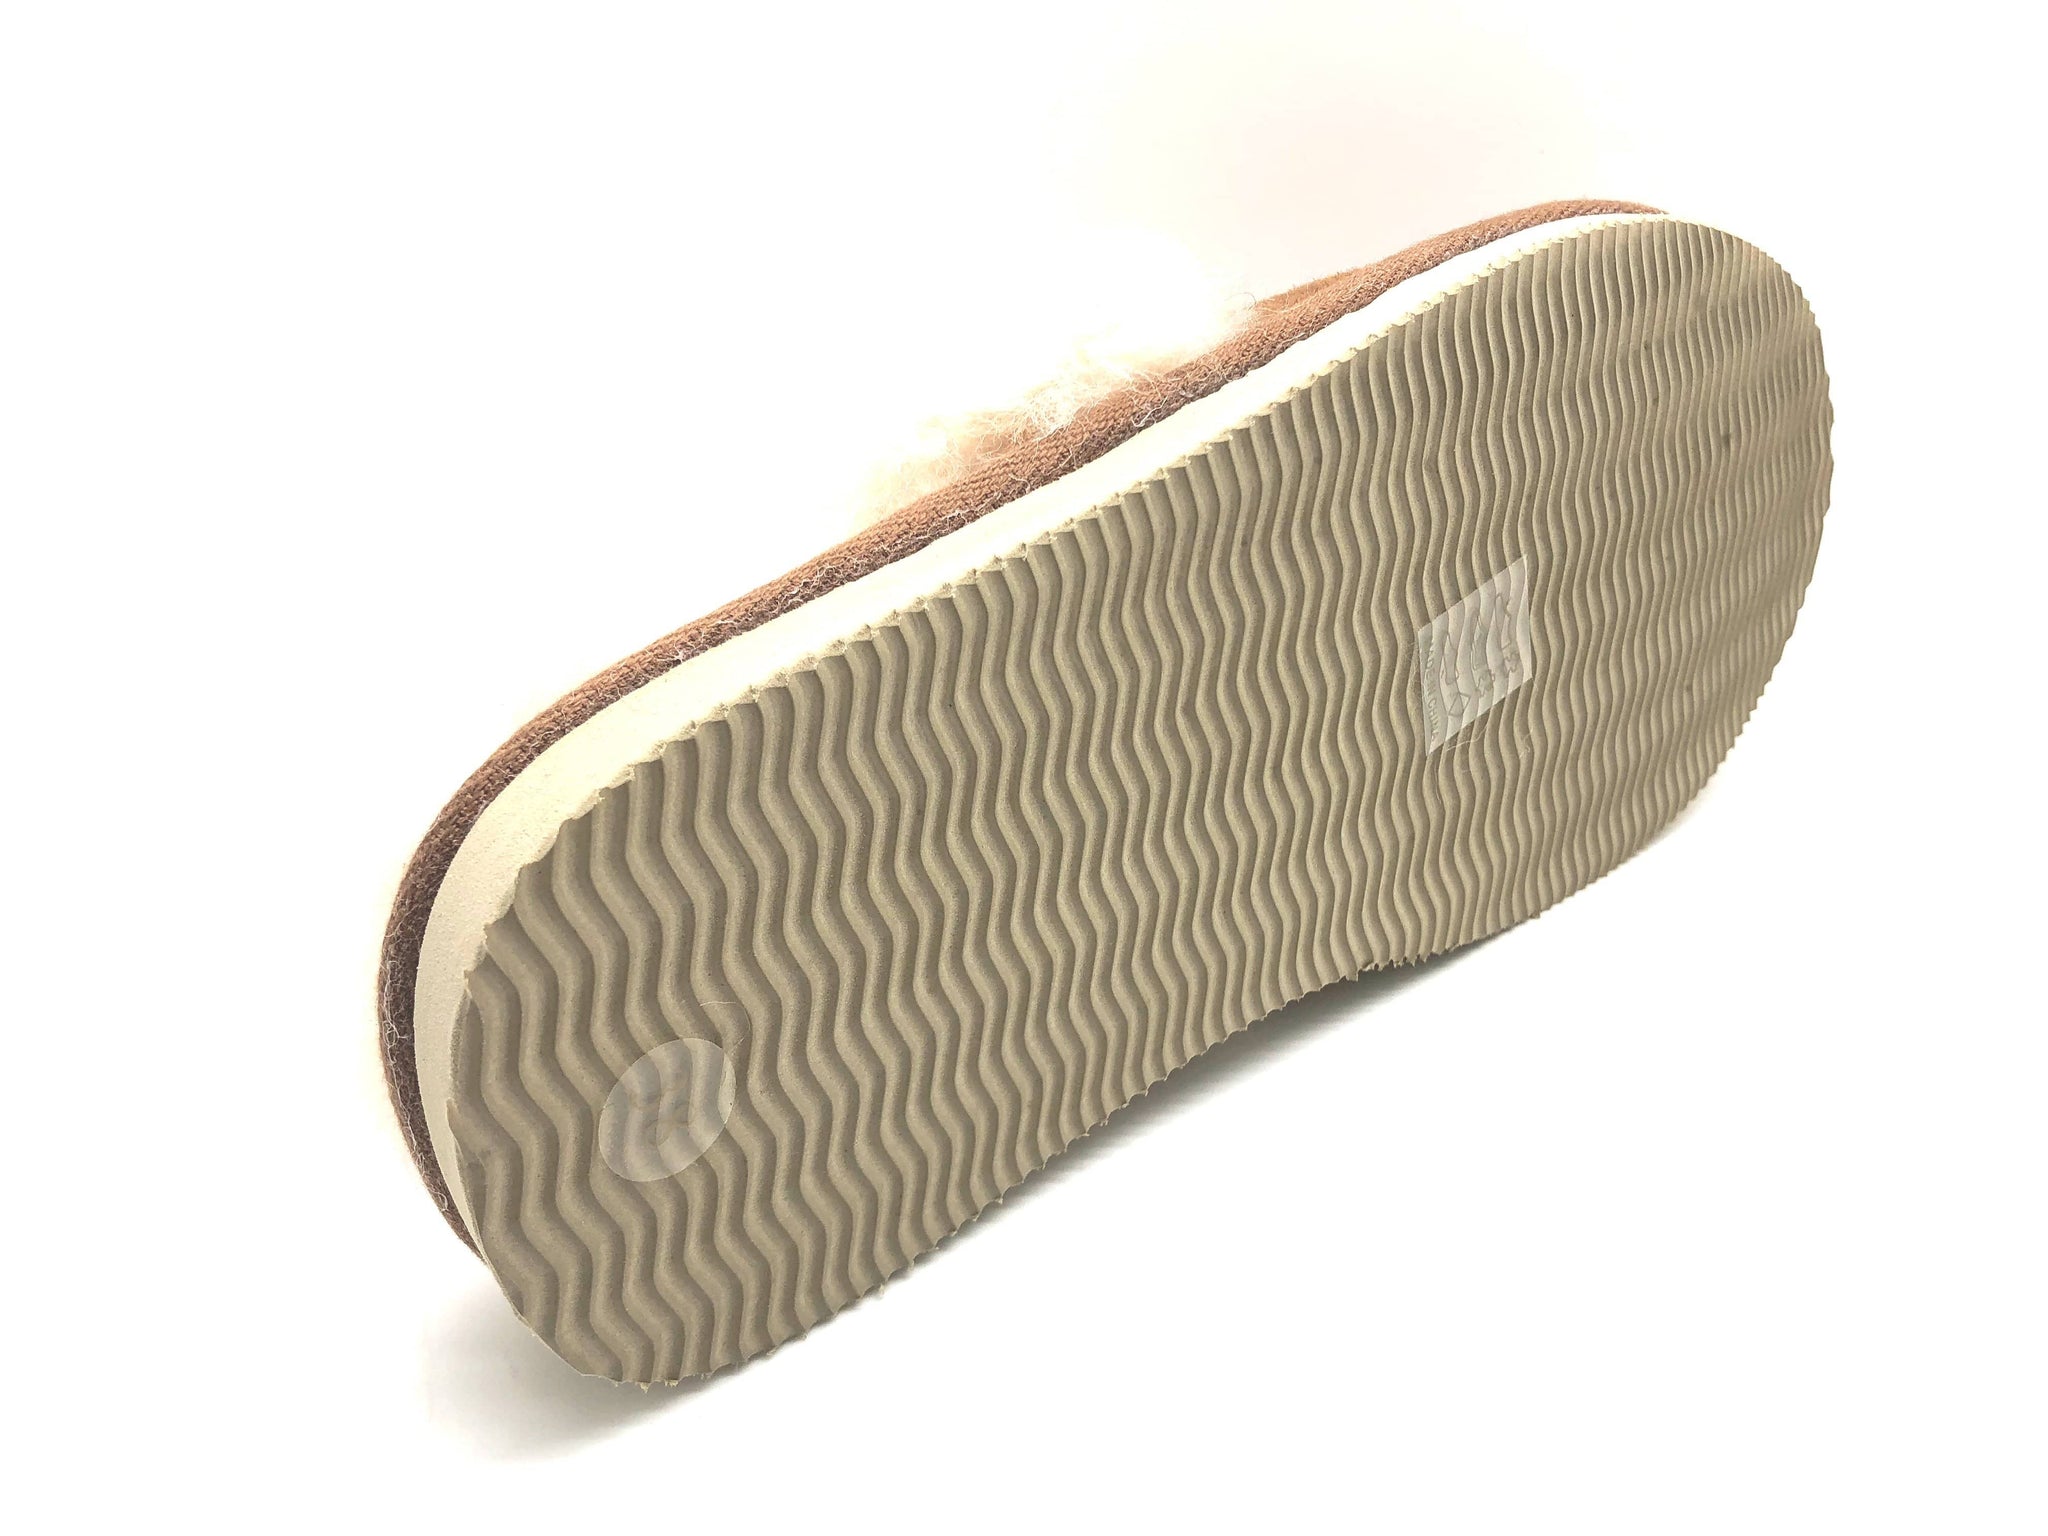 NAT 2 calzado thies 1856 ® Zapatilla de piel de oveja anacardo (W) moda sostenible moda ética